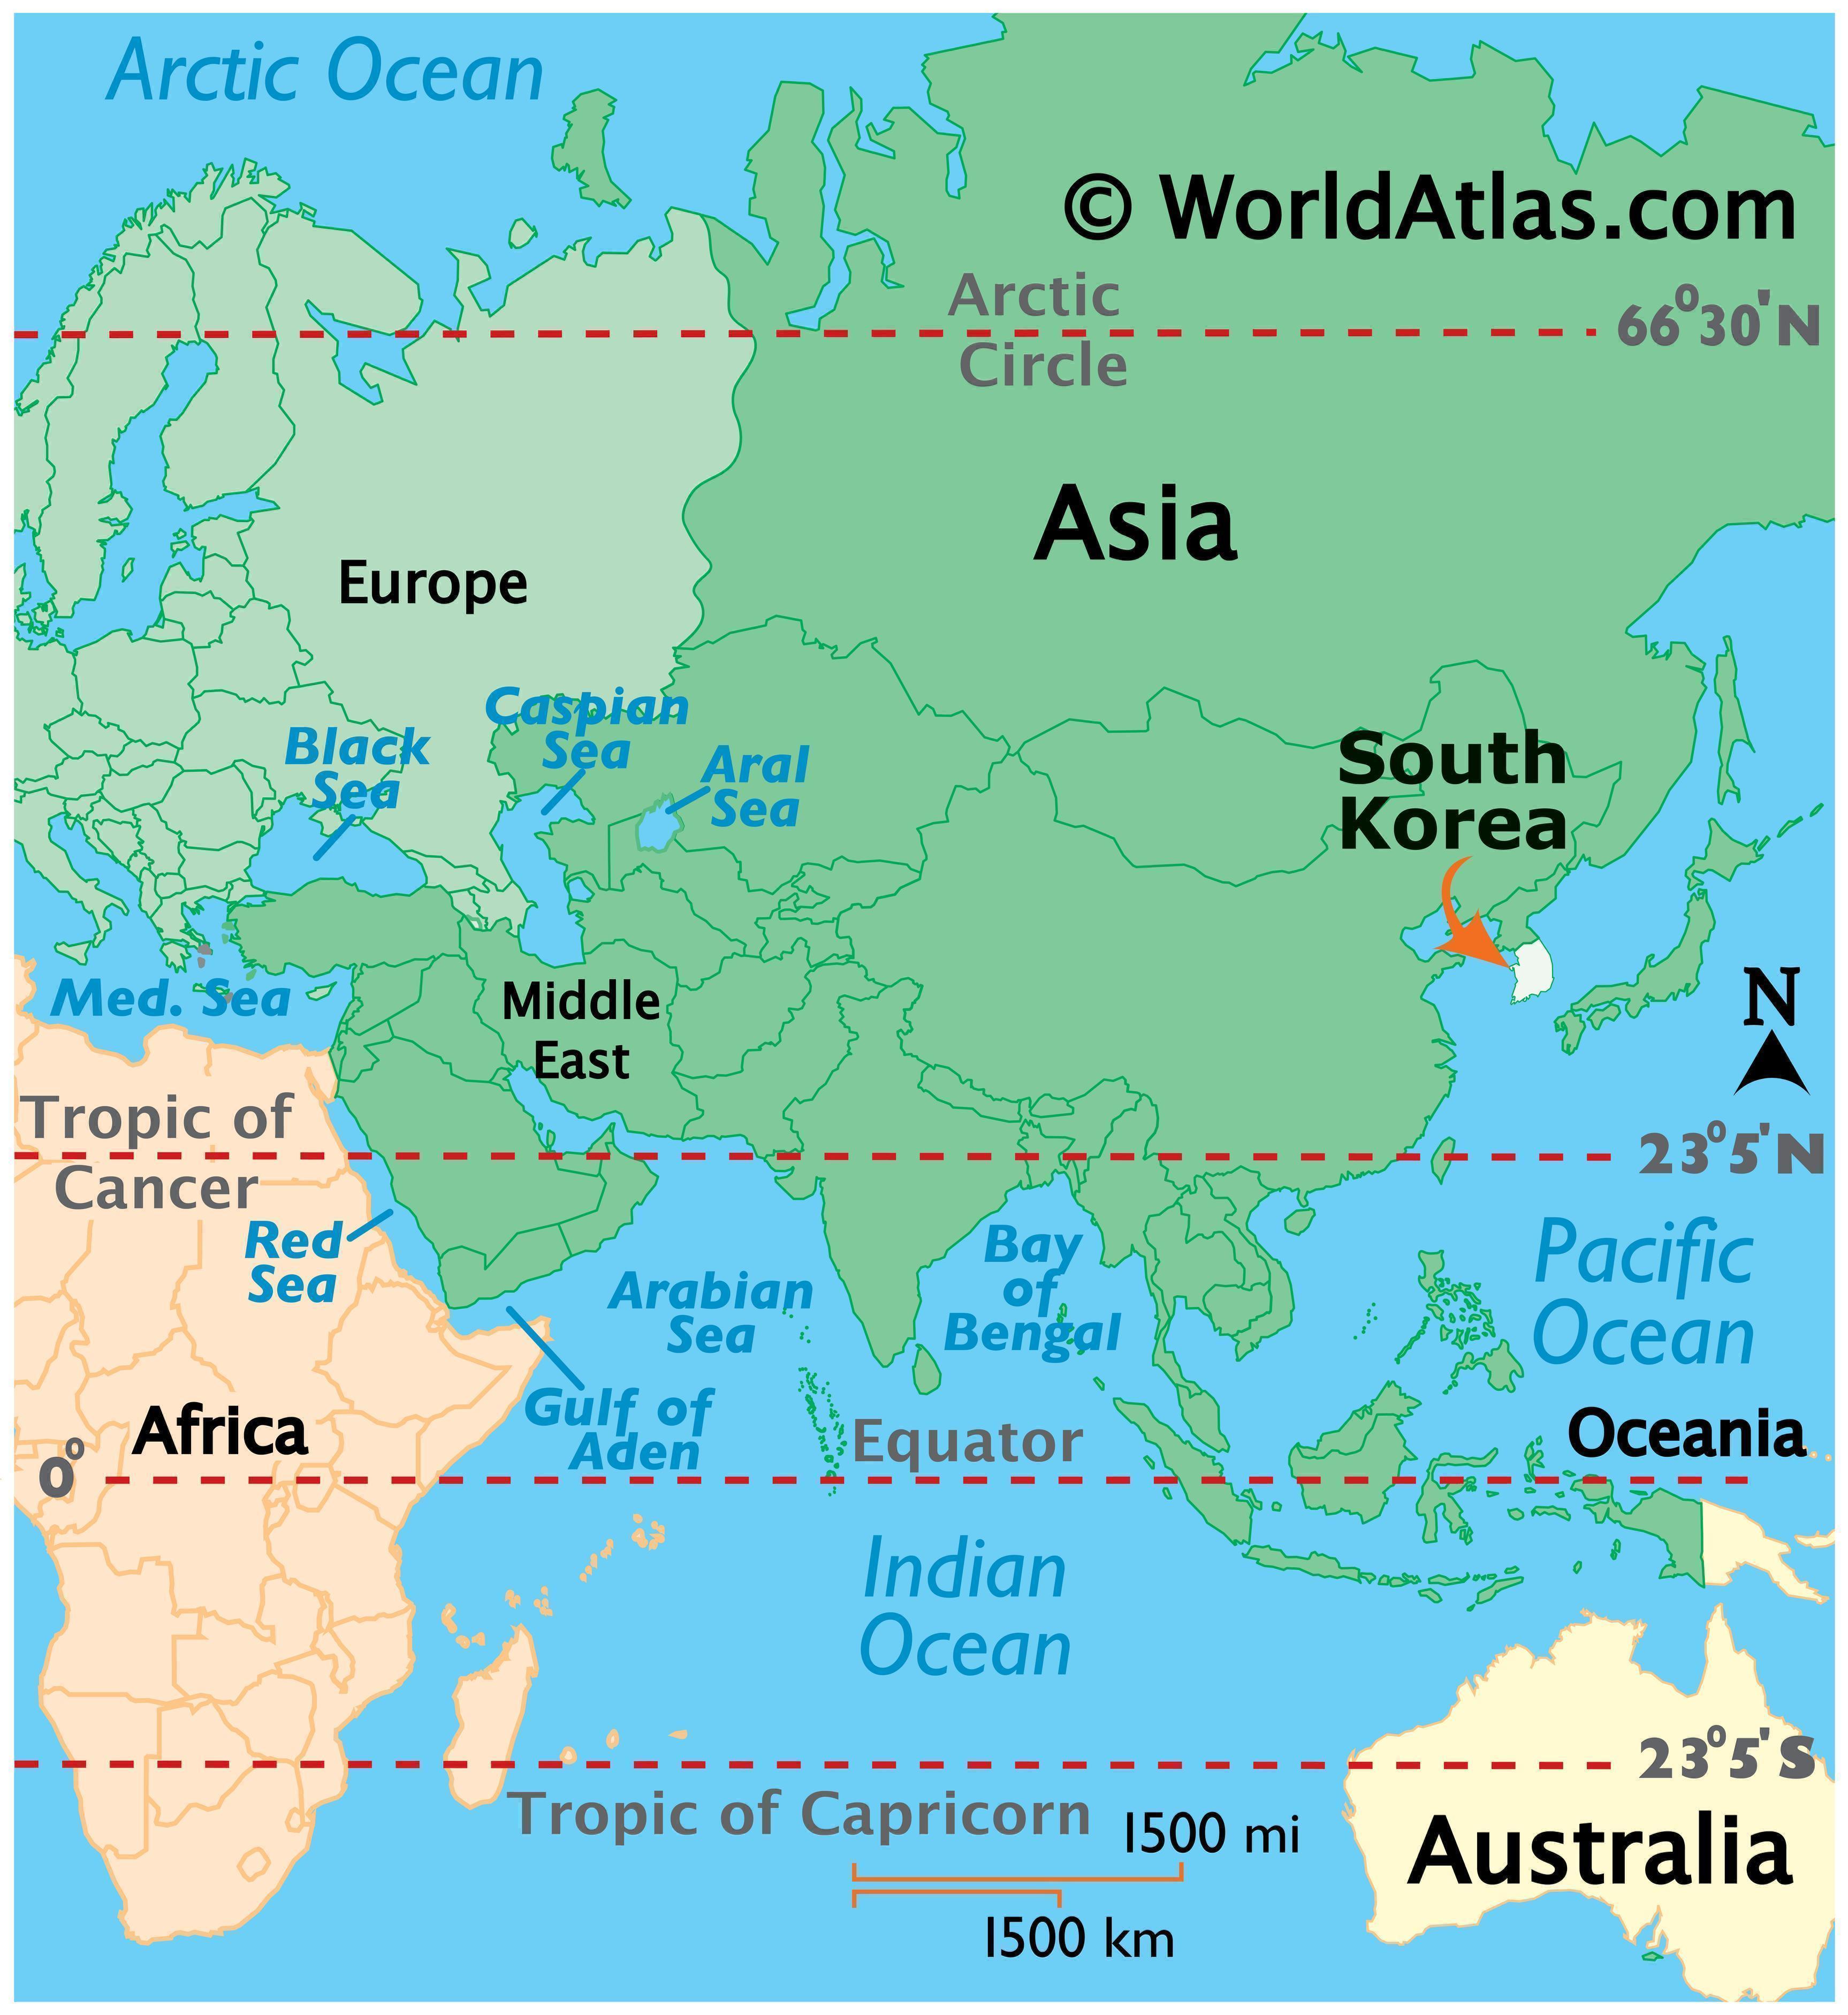 south korea location on world map South Korea Map Geography Of South Korea Map Of South Korea south korea location on world map